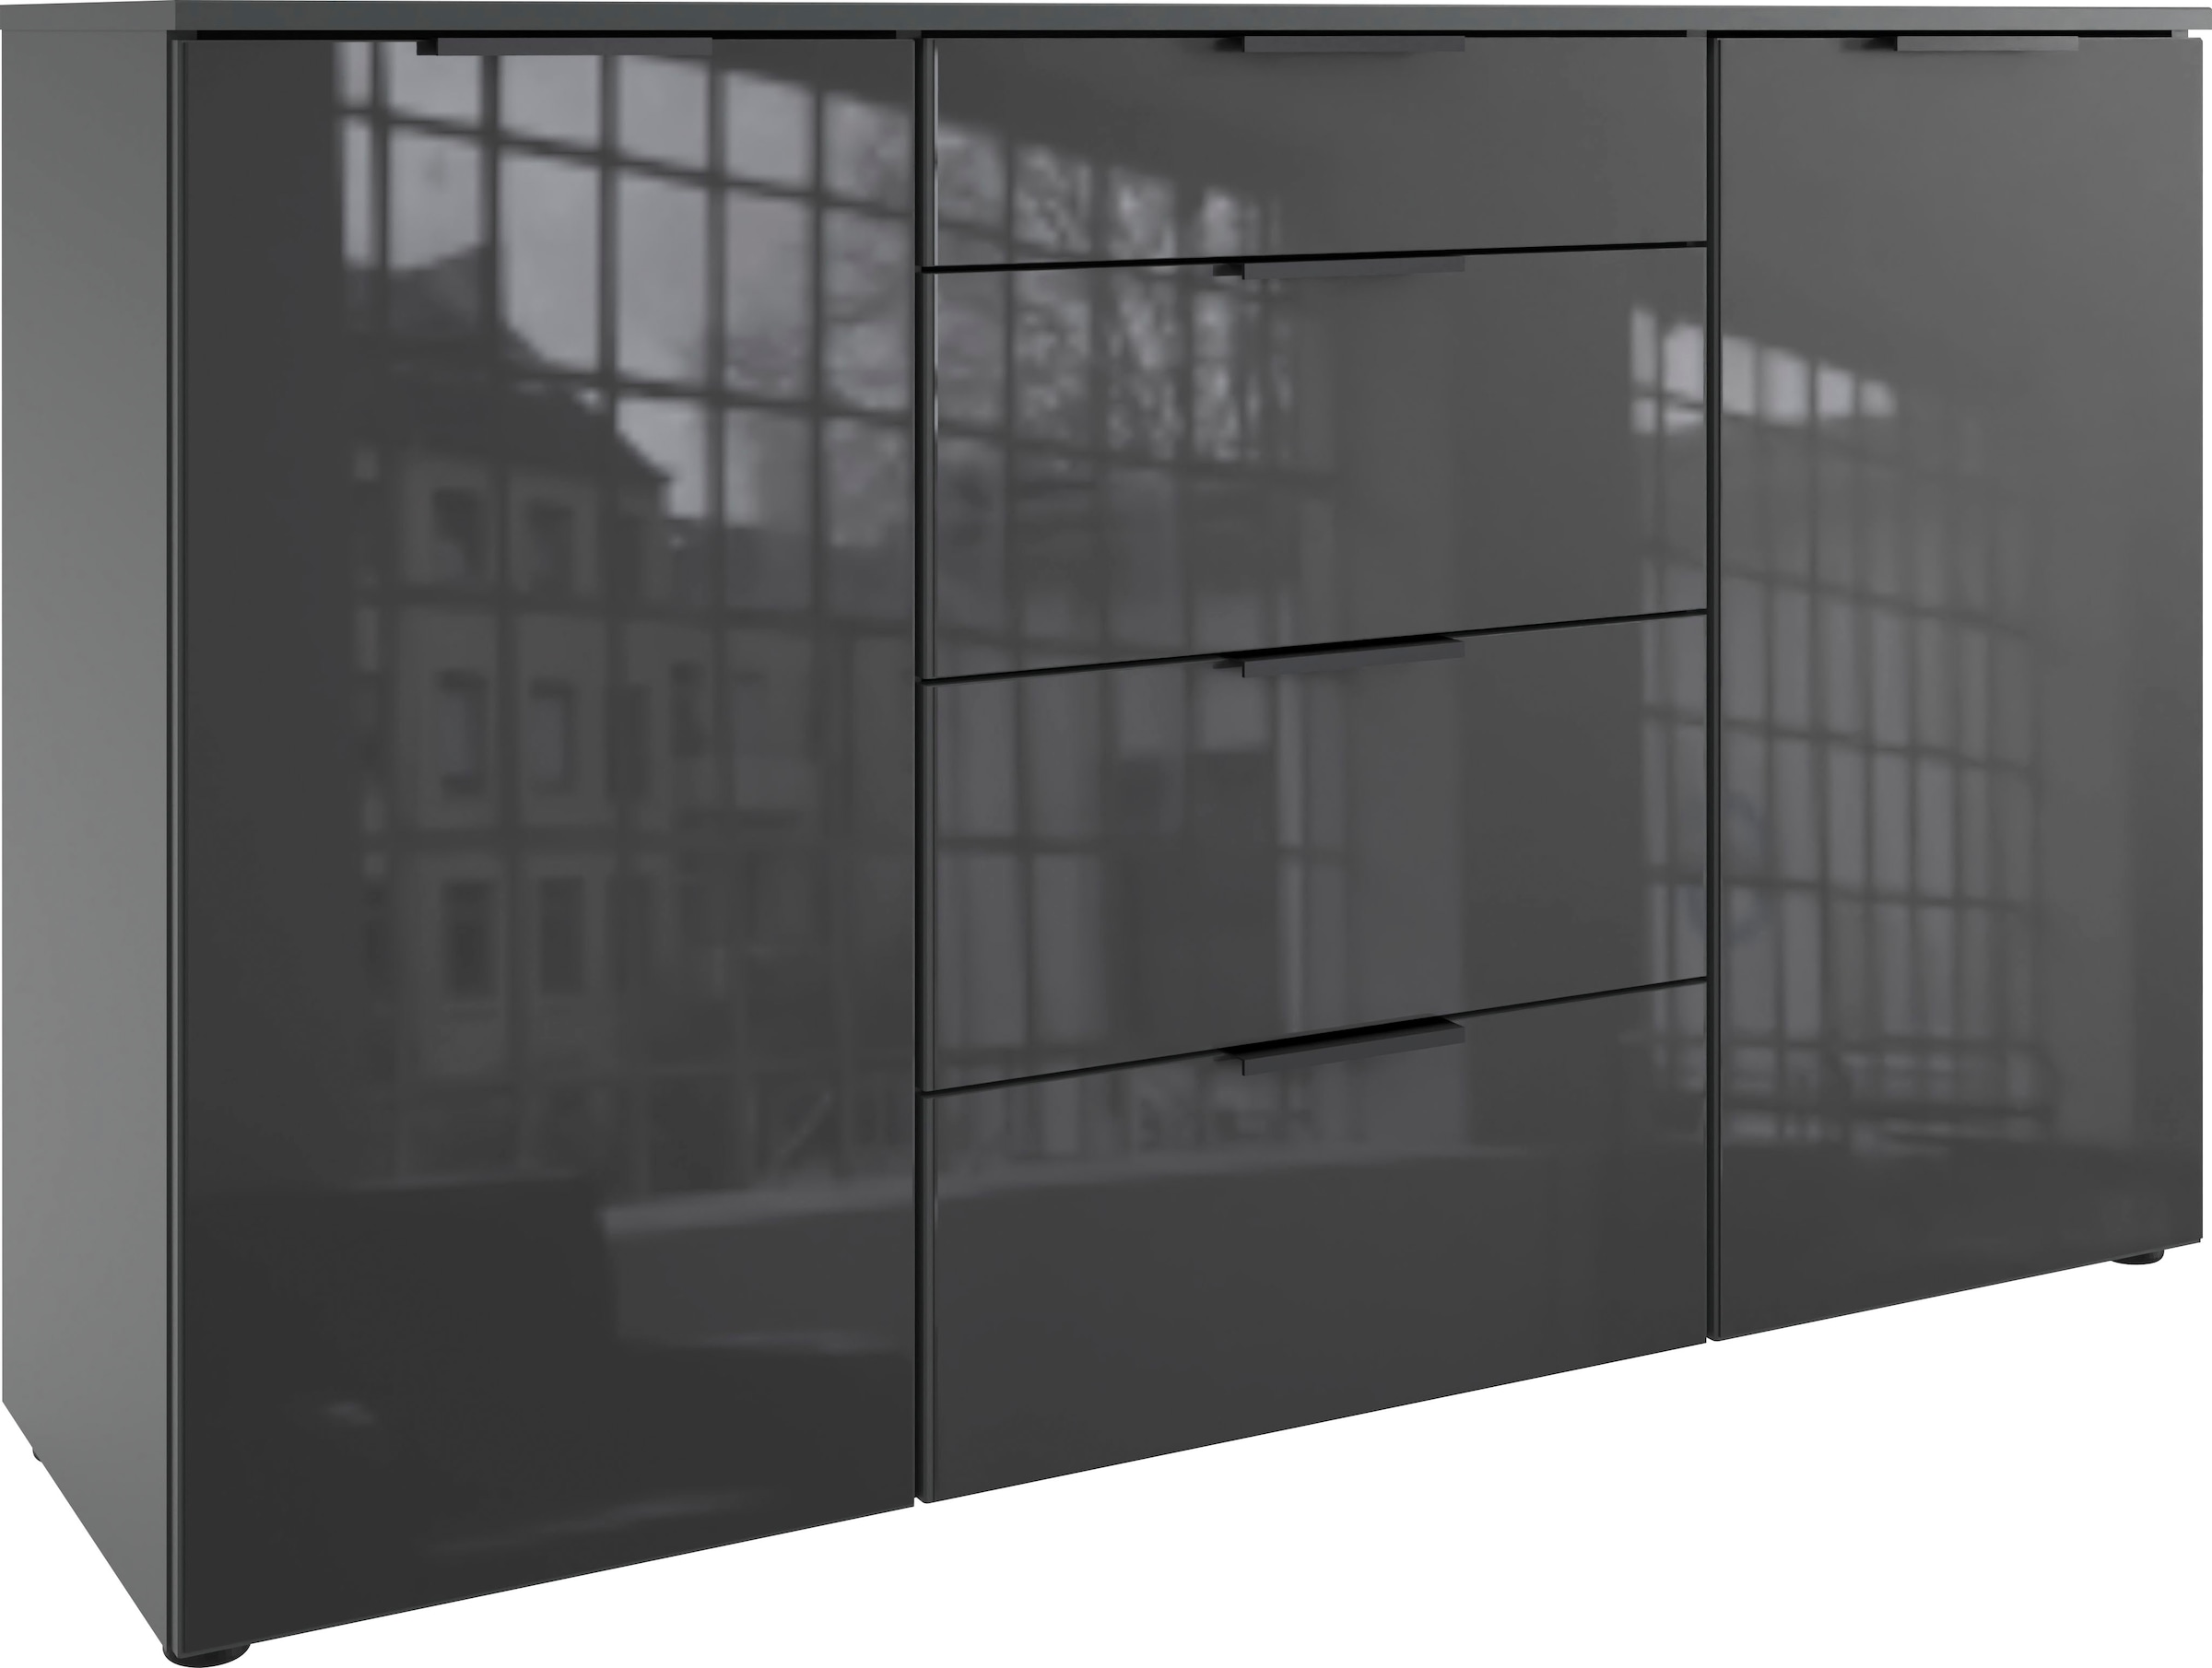 Wimex Kombikommode "Level36 black C by fresh to go", mit Glaselementen auf der Front, soft-close Funktion, 135cm breit